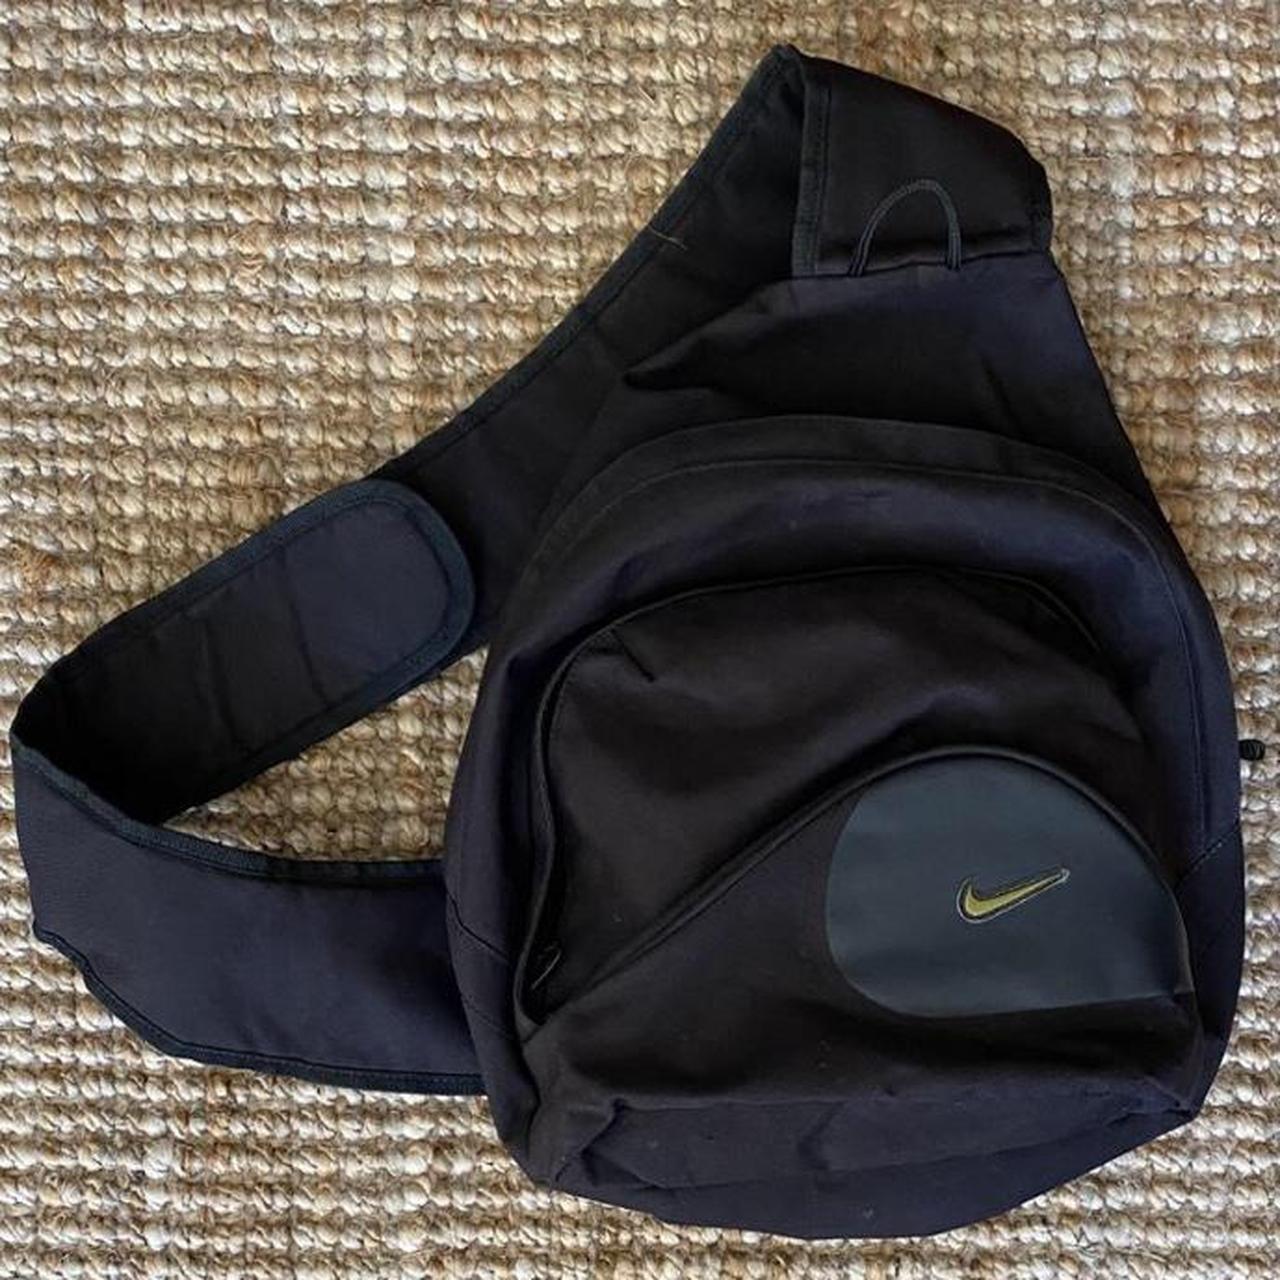 Nike strap on (bag) Vintage Black Swoosh Nike Sling... - Depop